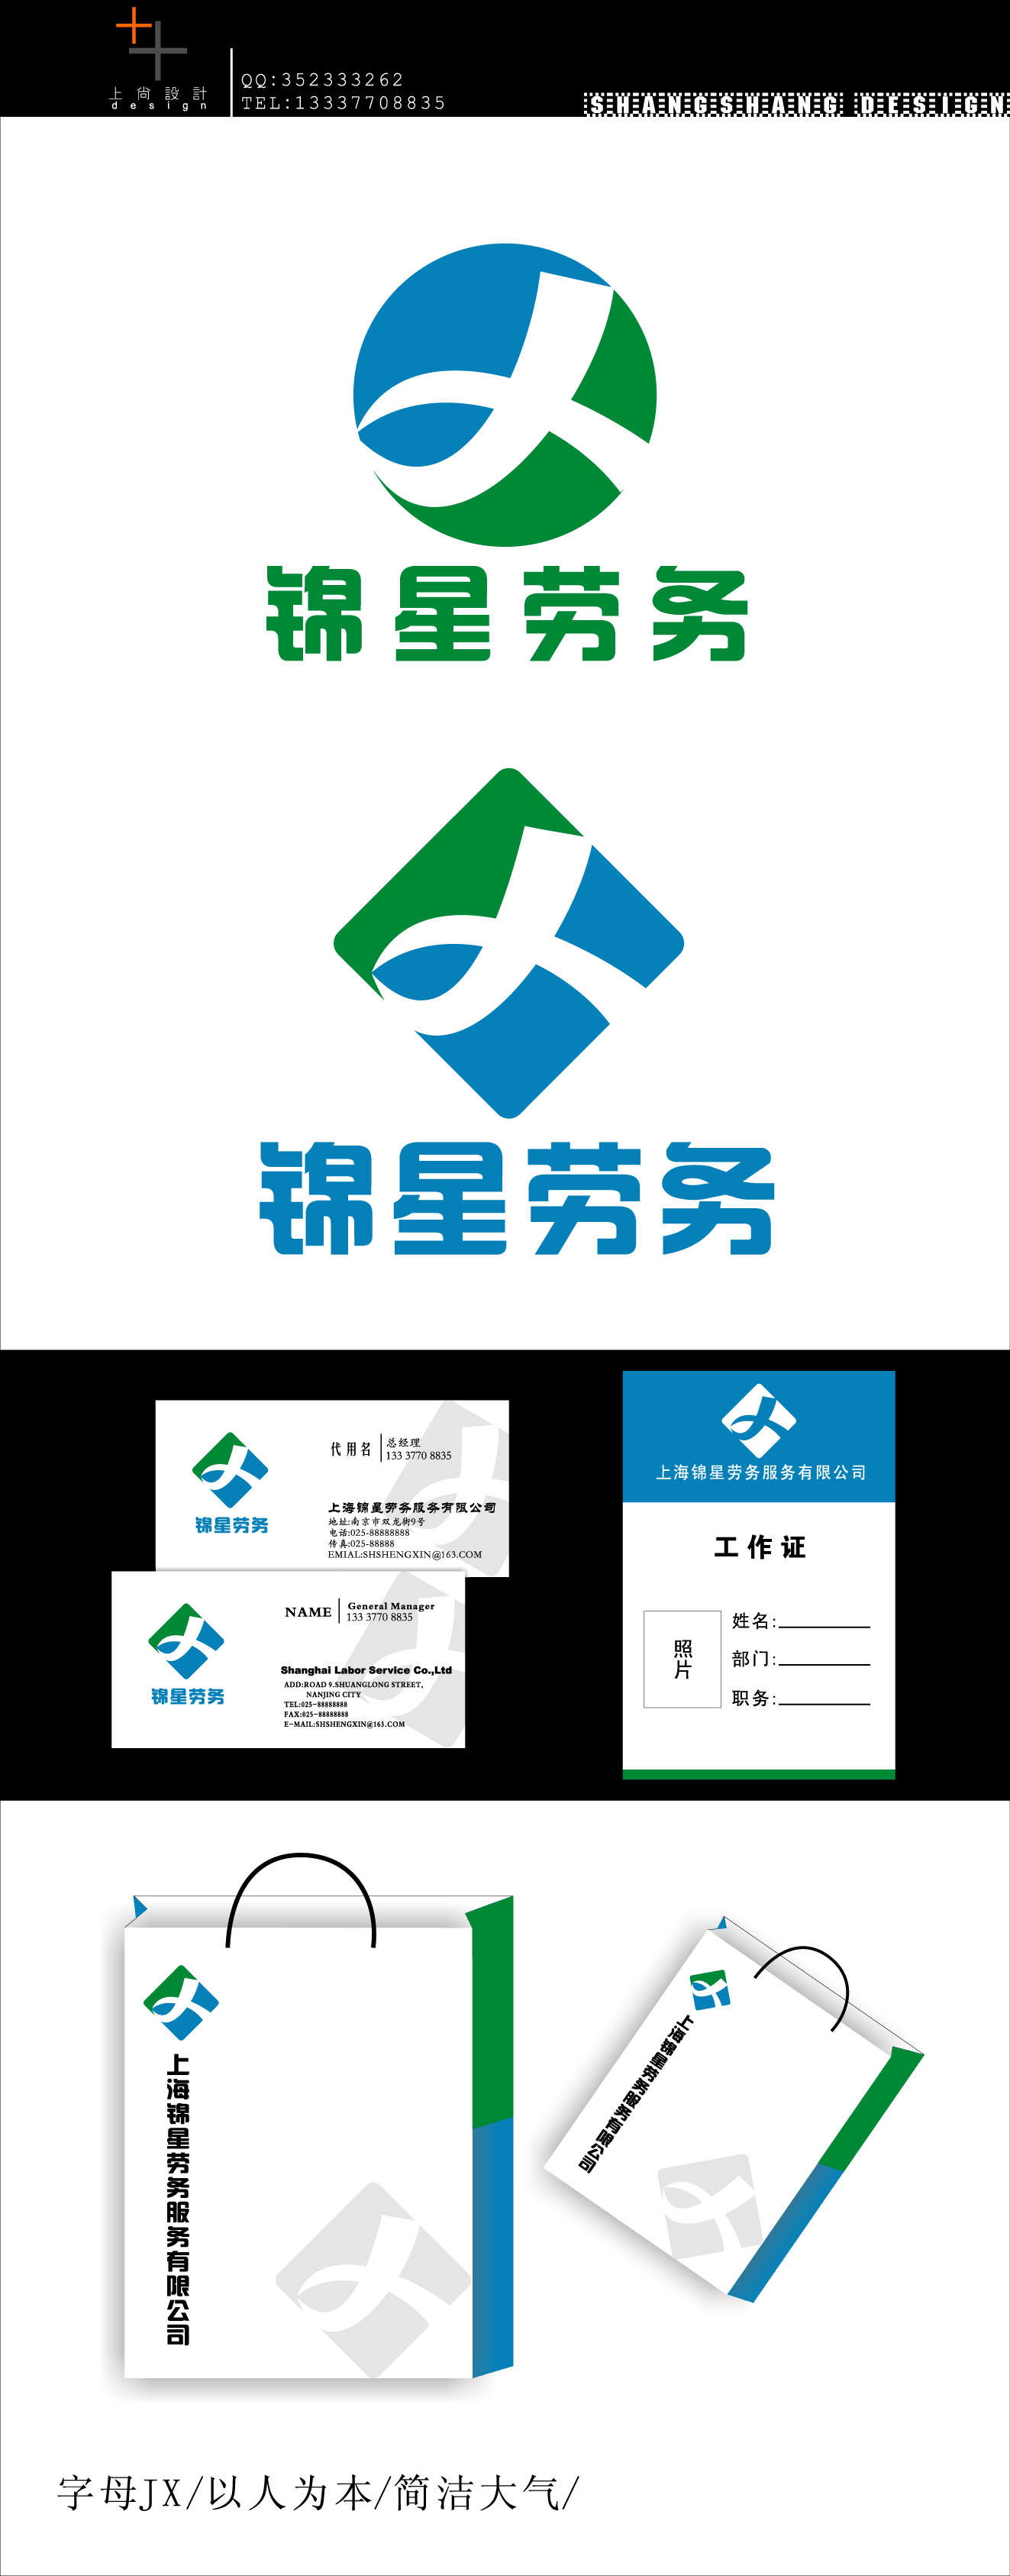 上海锦星劳务服务有限公司Logo设计等_1000